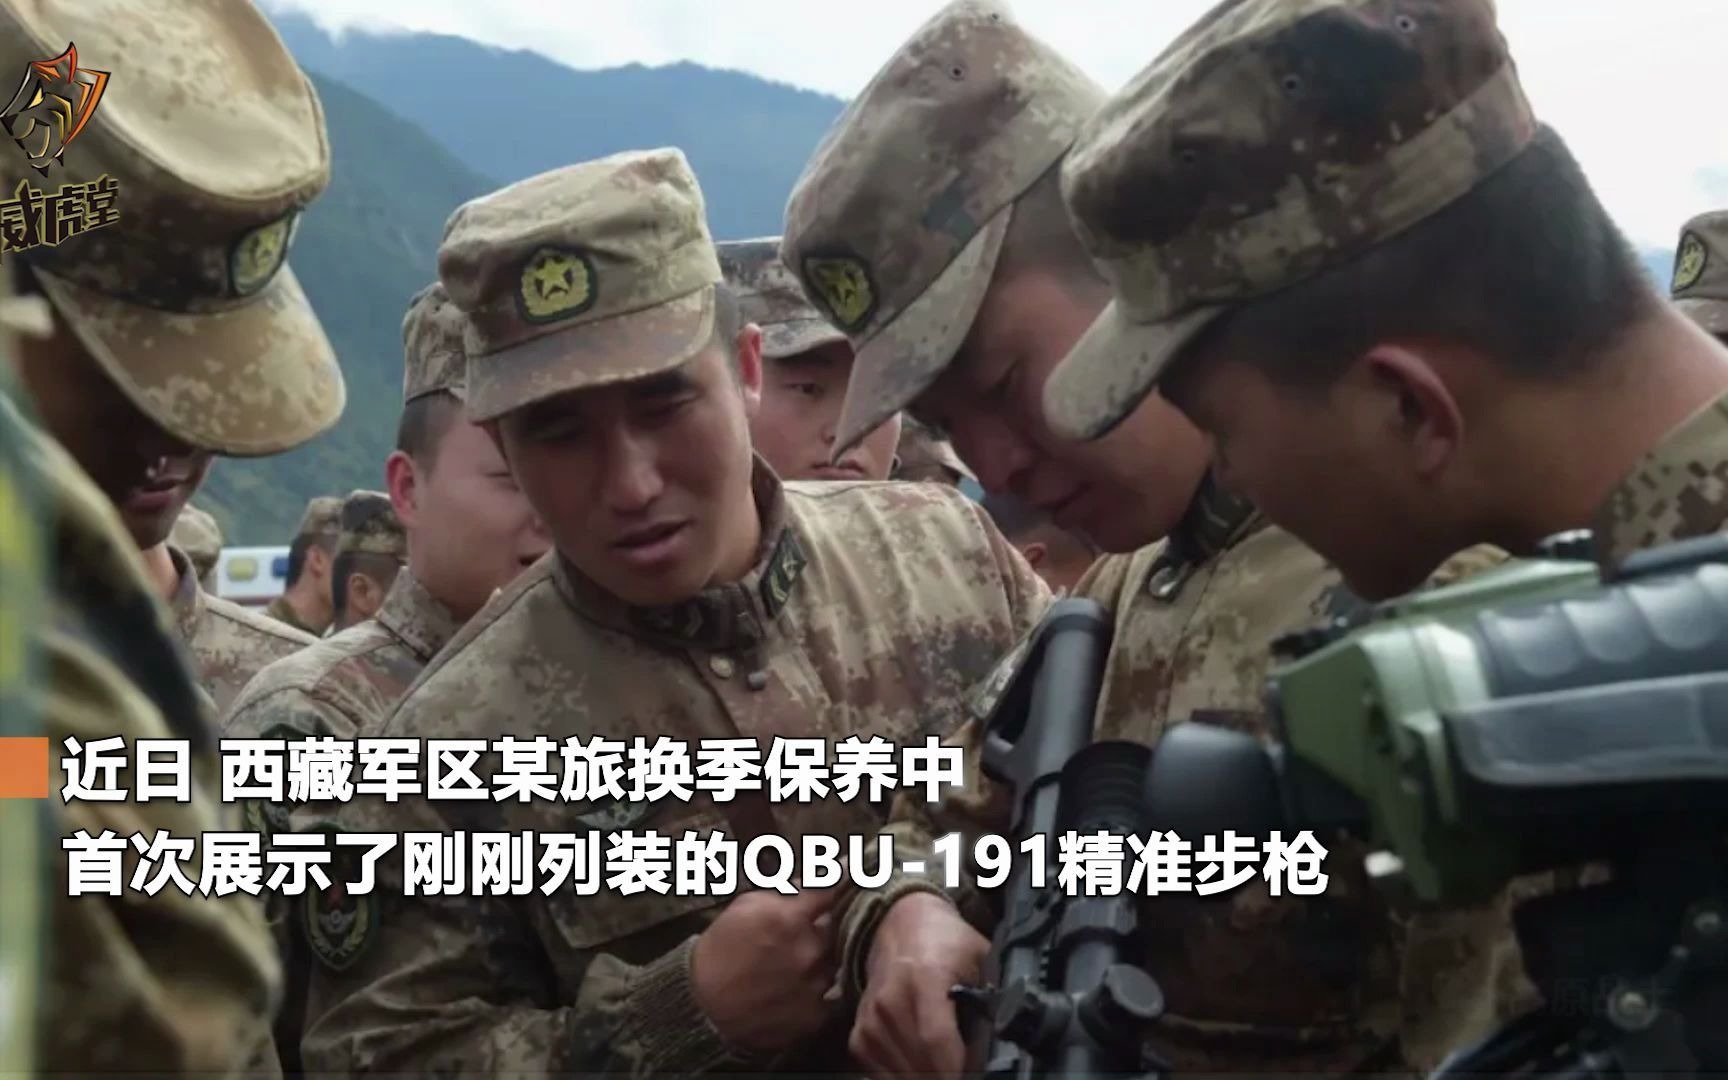 西藏军区某旅展示QBU-191精准步枪，子弹威力更强，还能连wifi